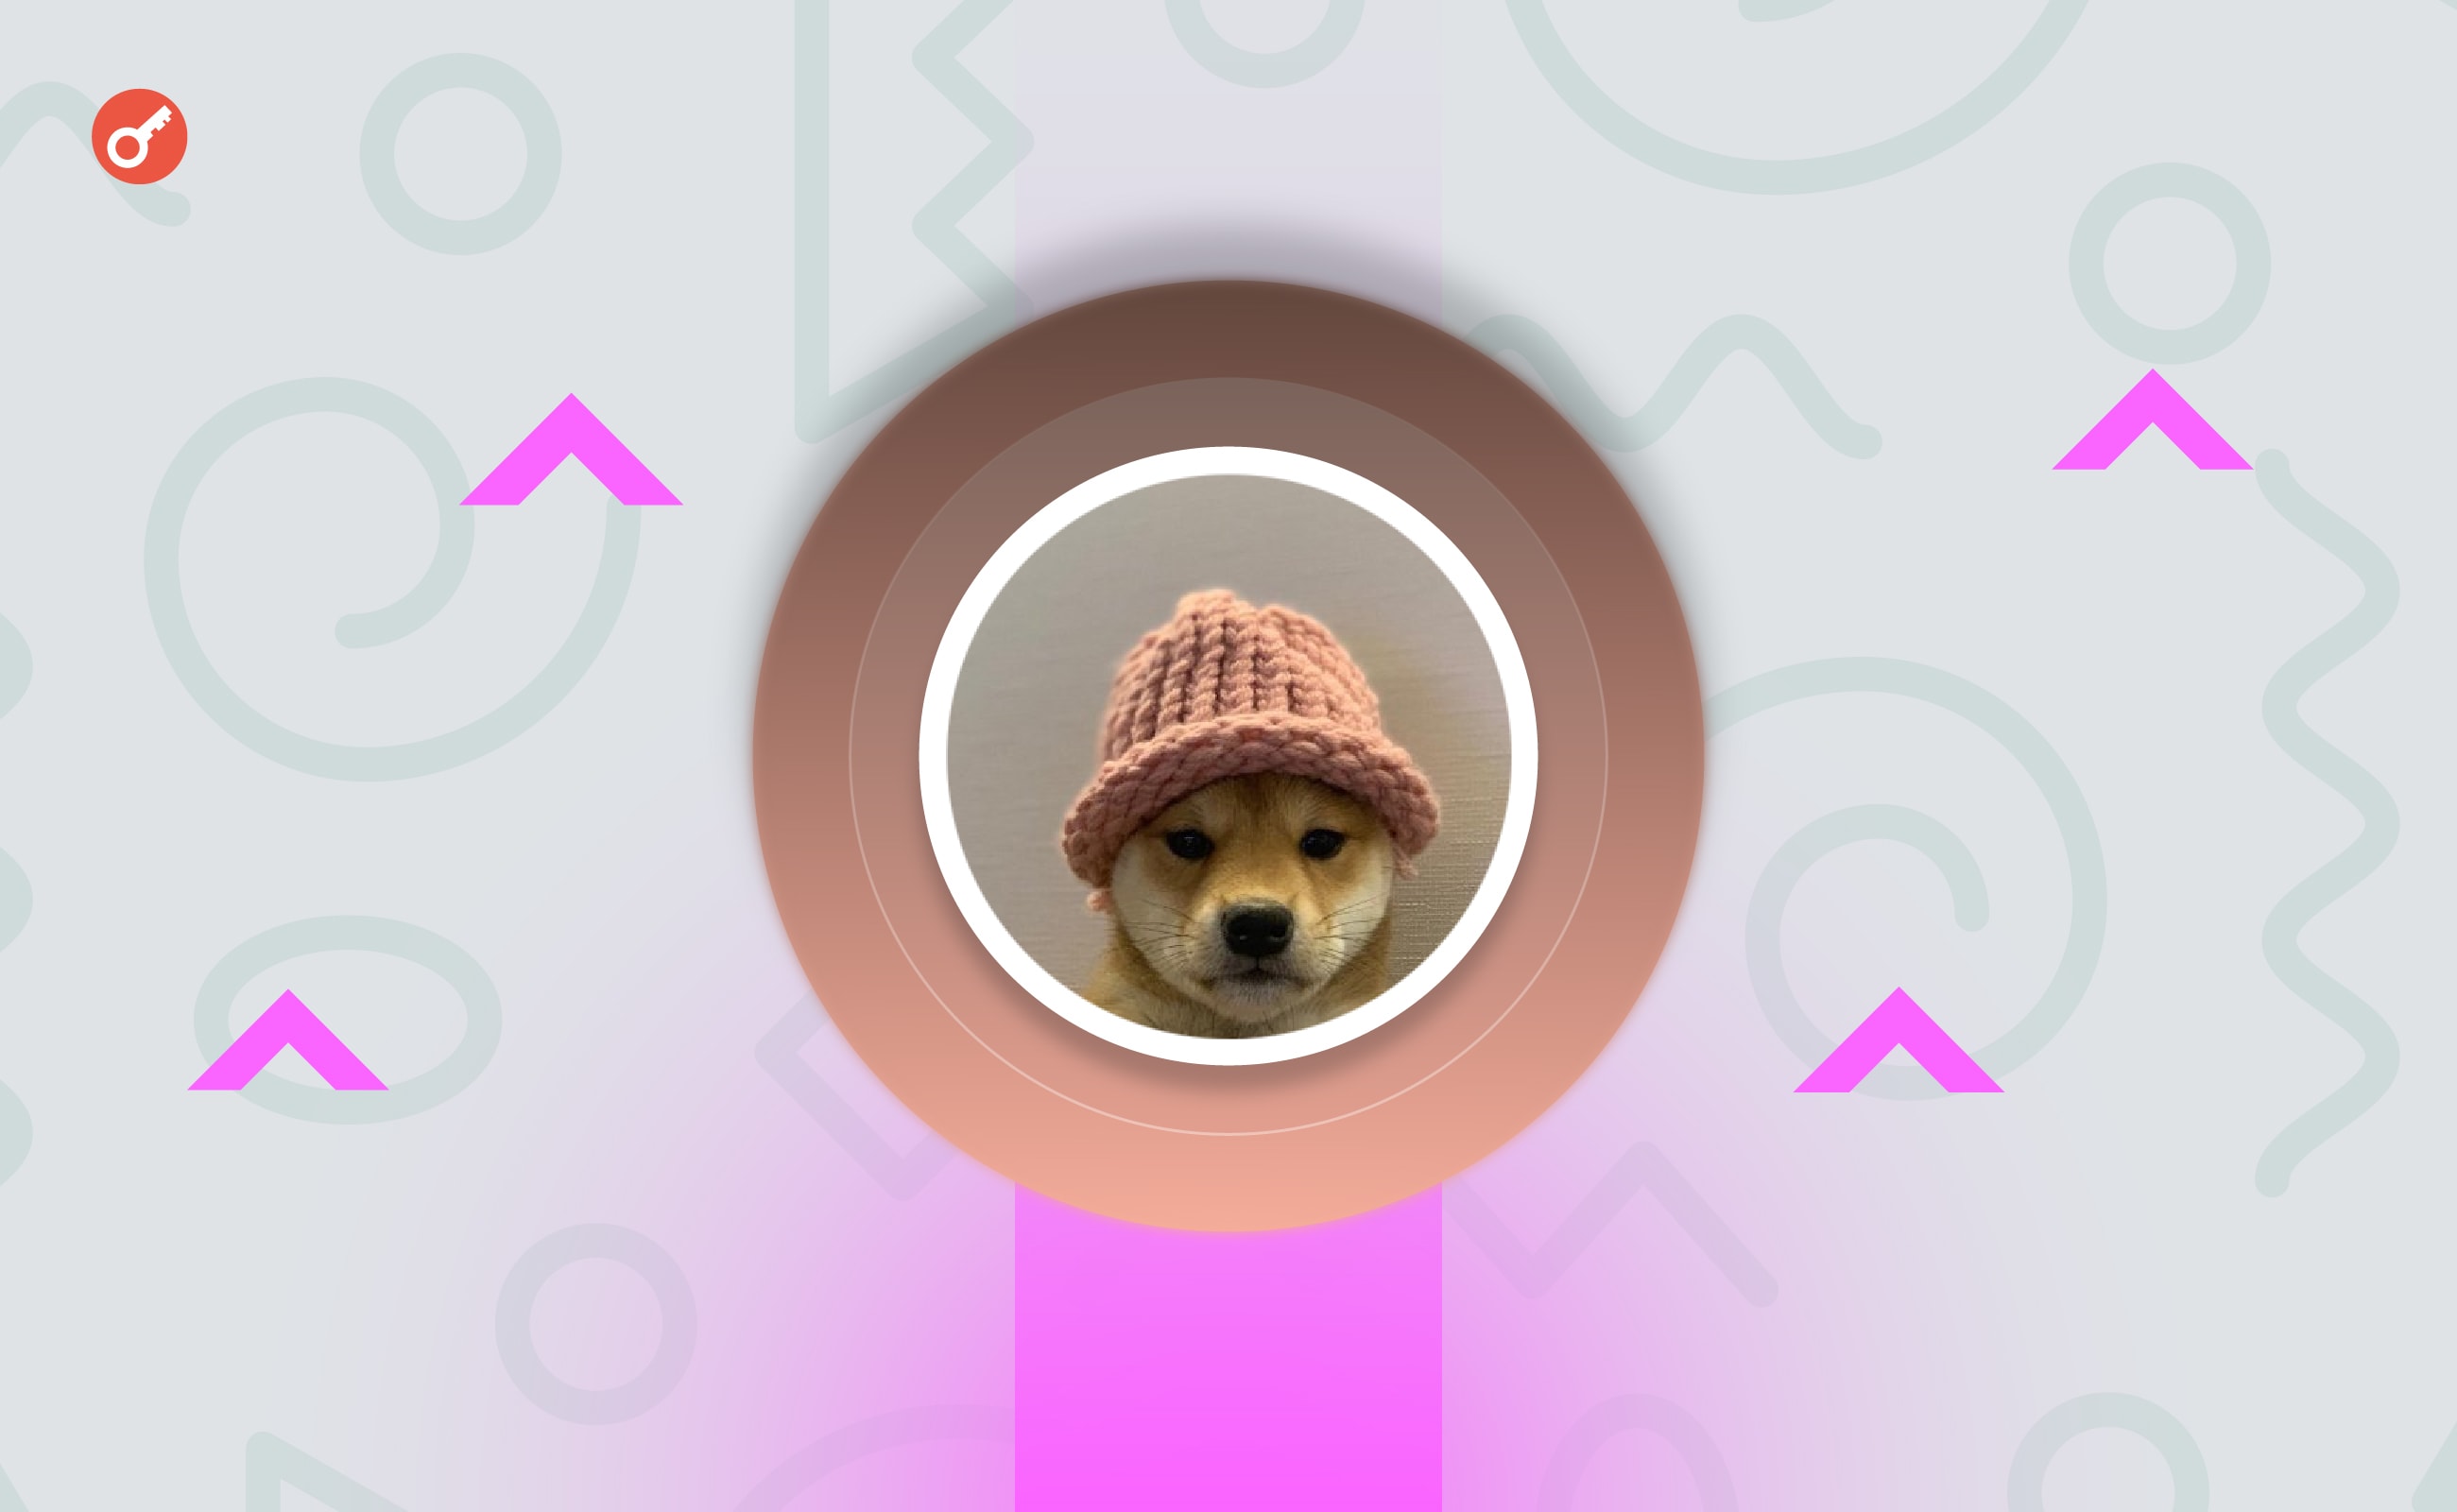 Фото пса з логотипа мемкоїна Dogwifhat готові купити як NFT за $26 000. Головний колаж новини.